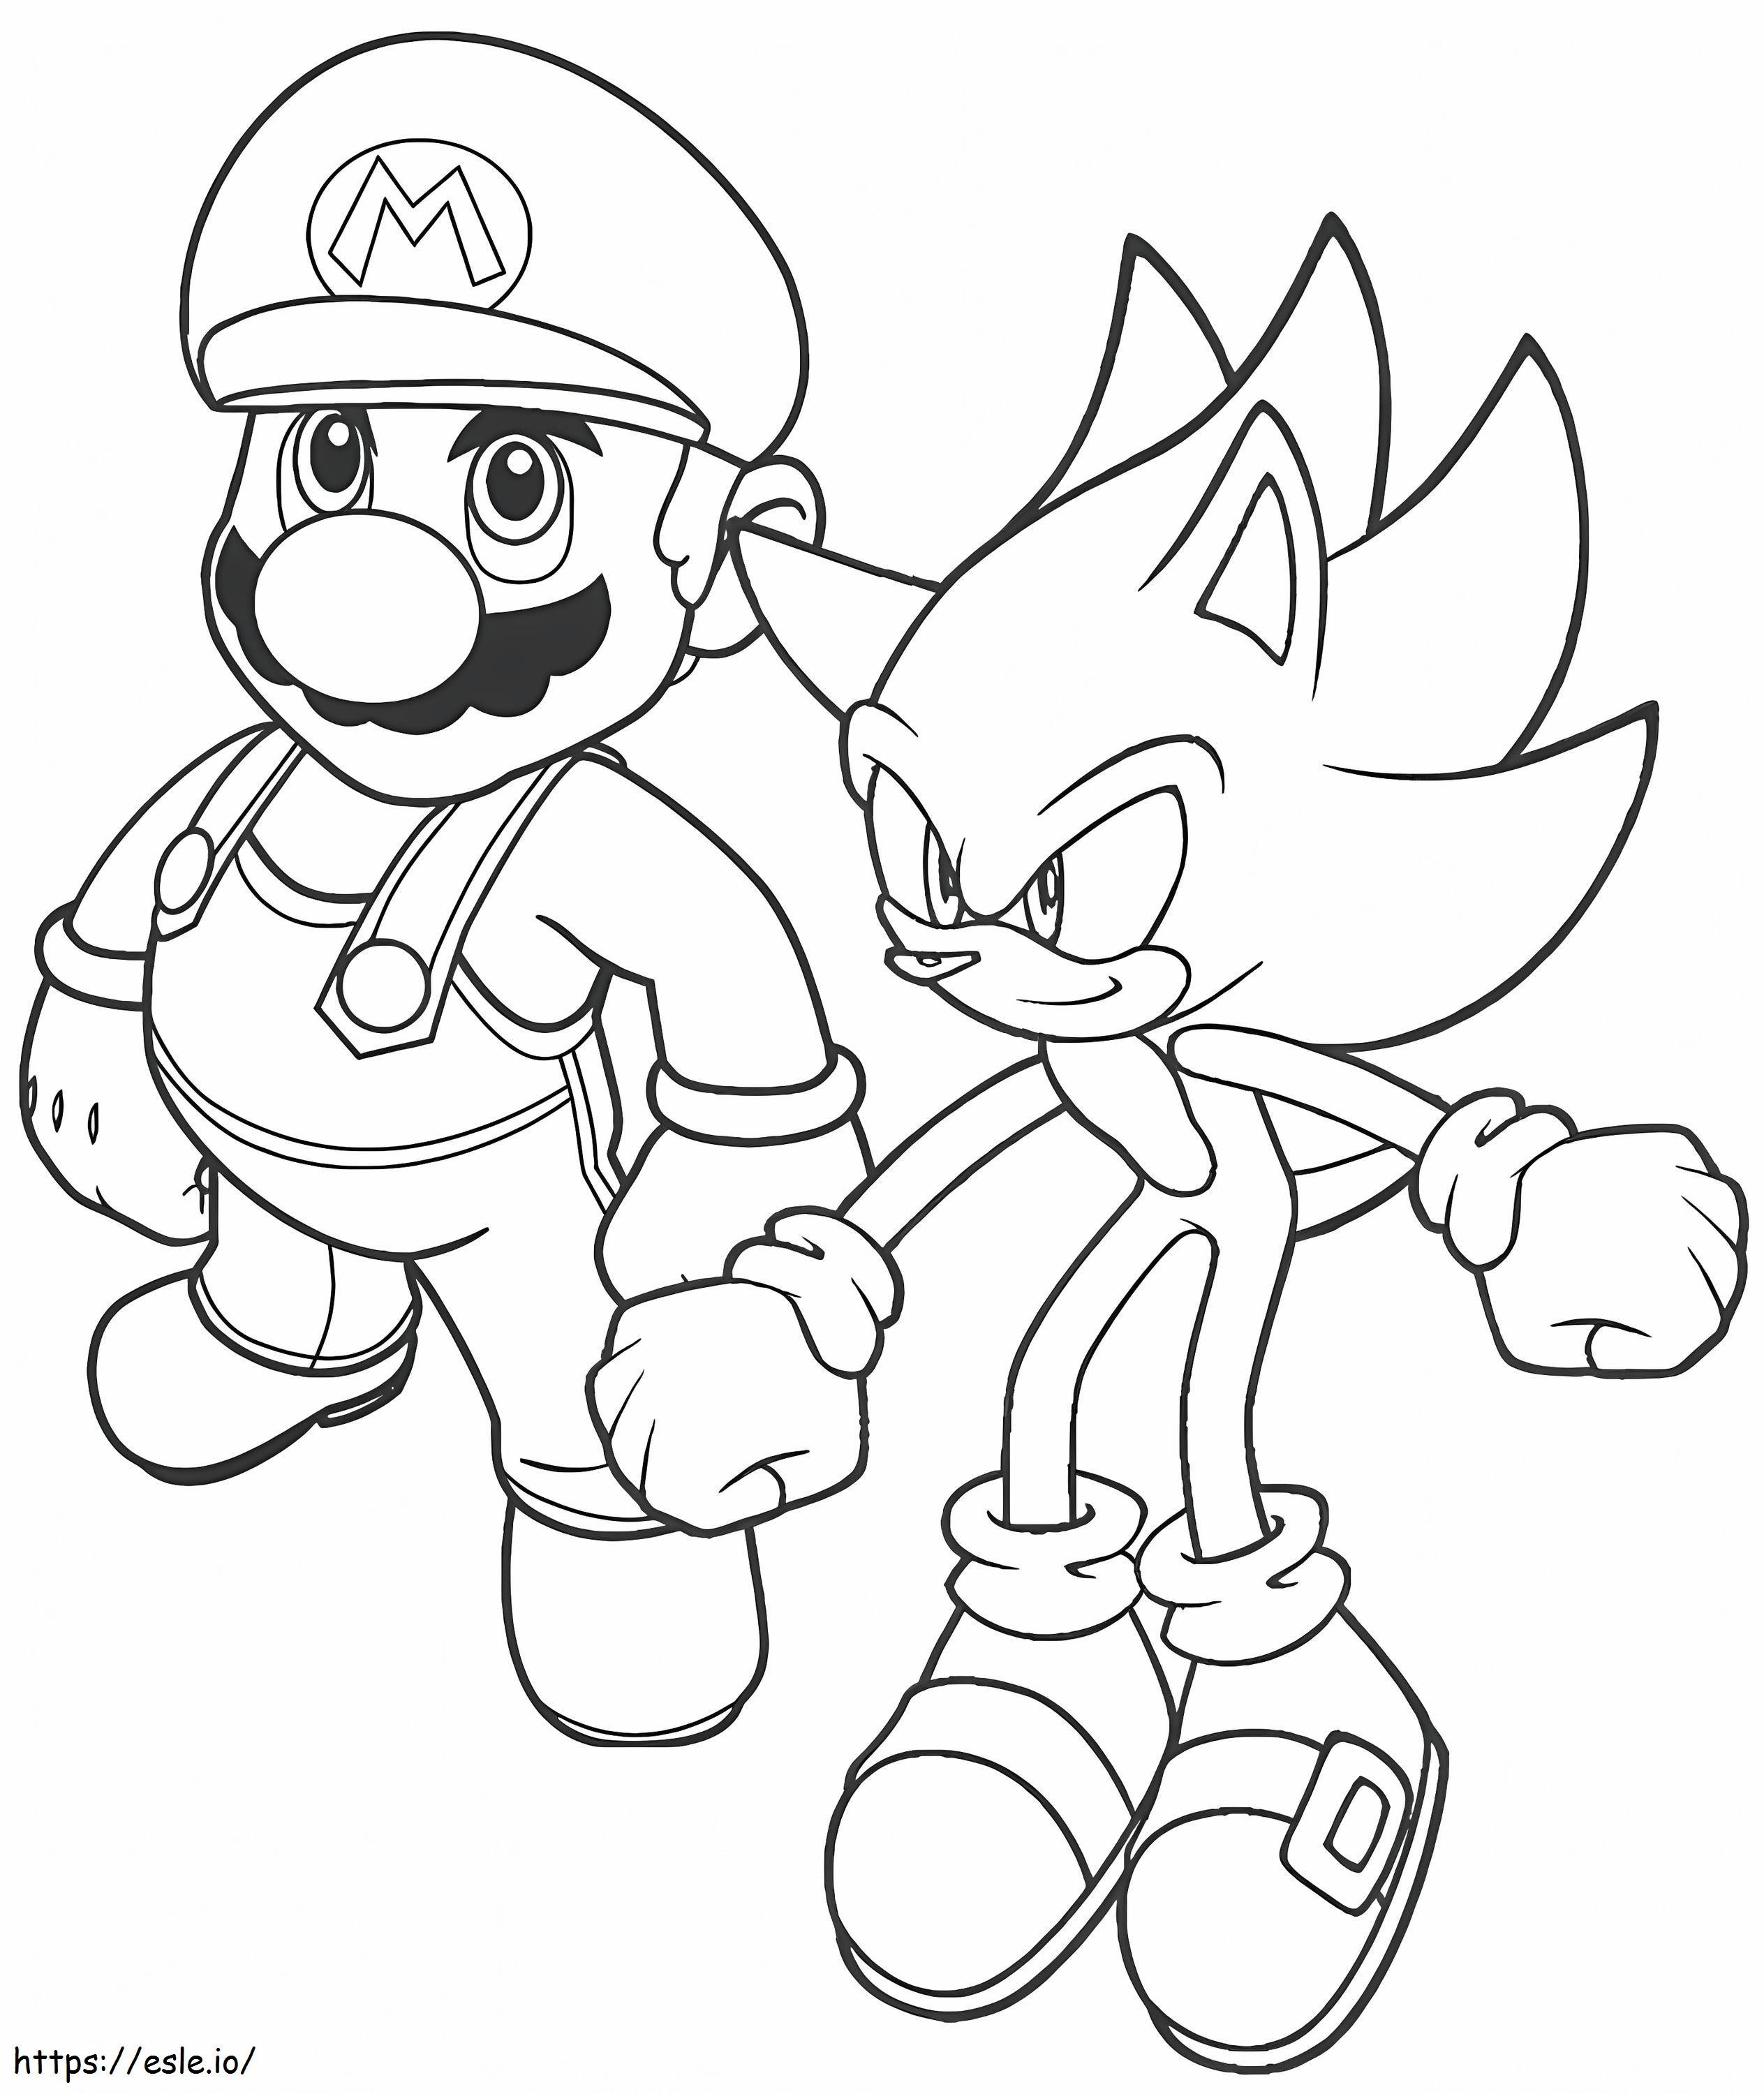  Mario ja Sonic värityskuva